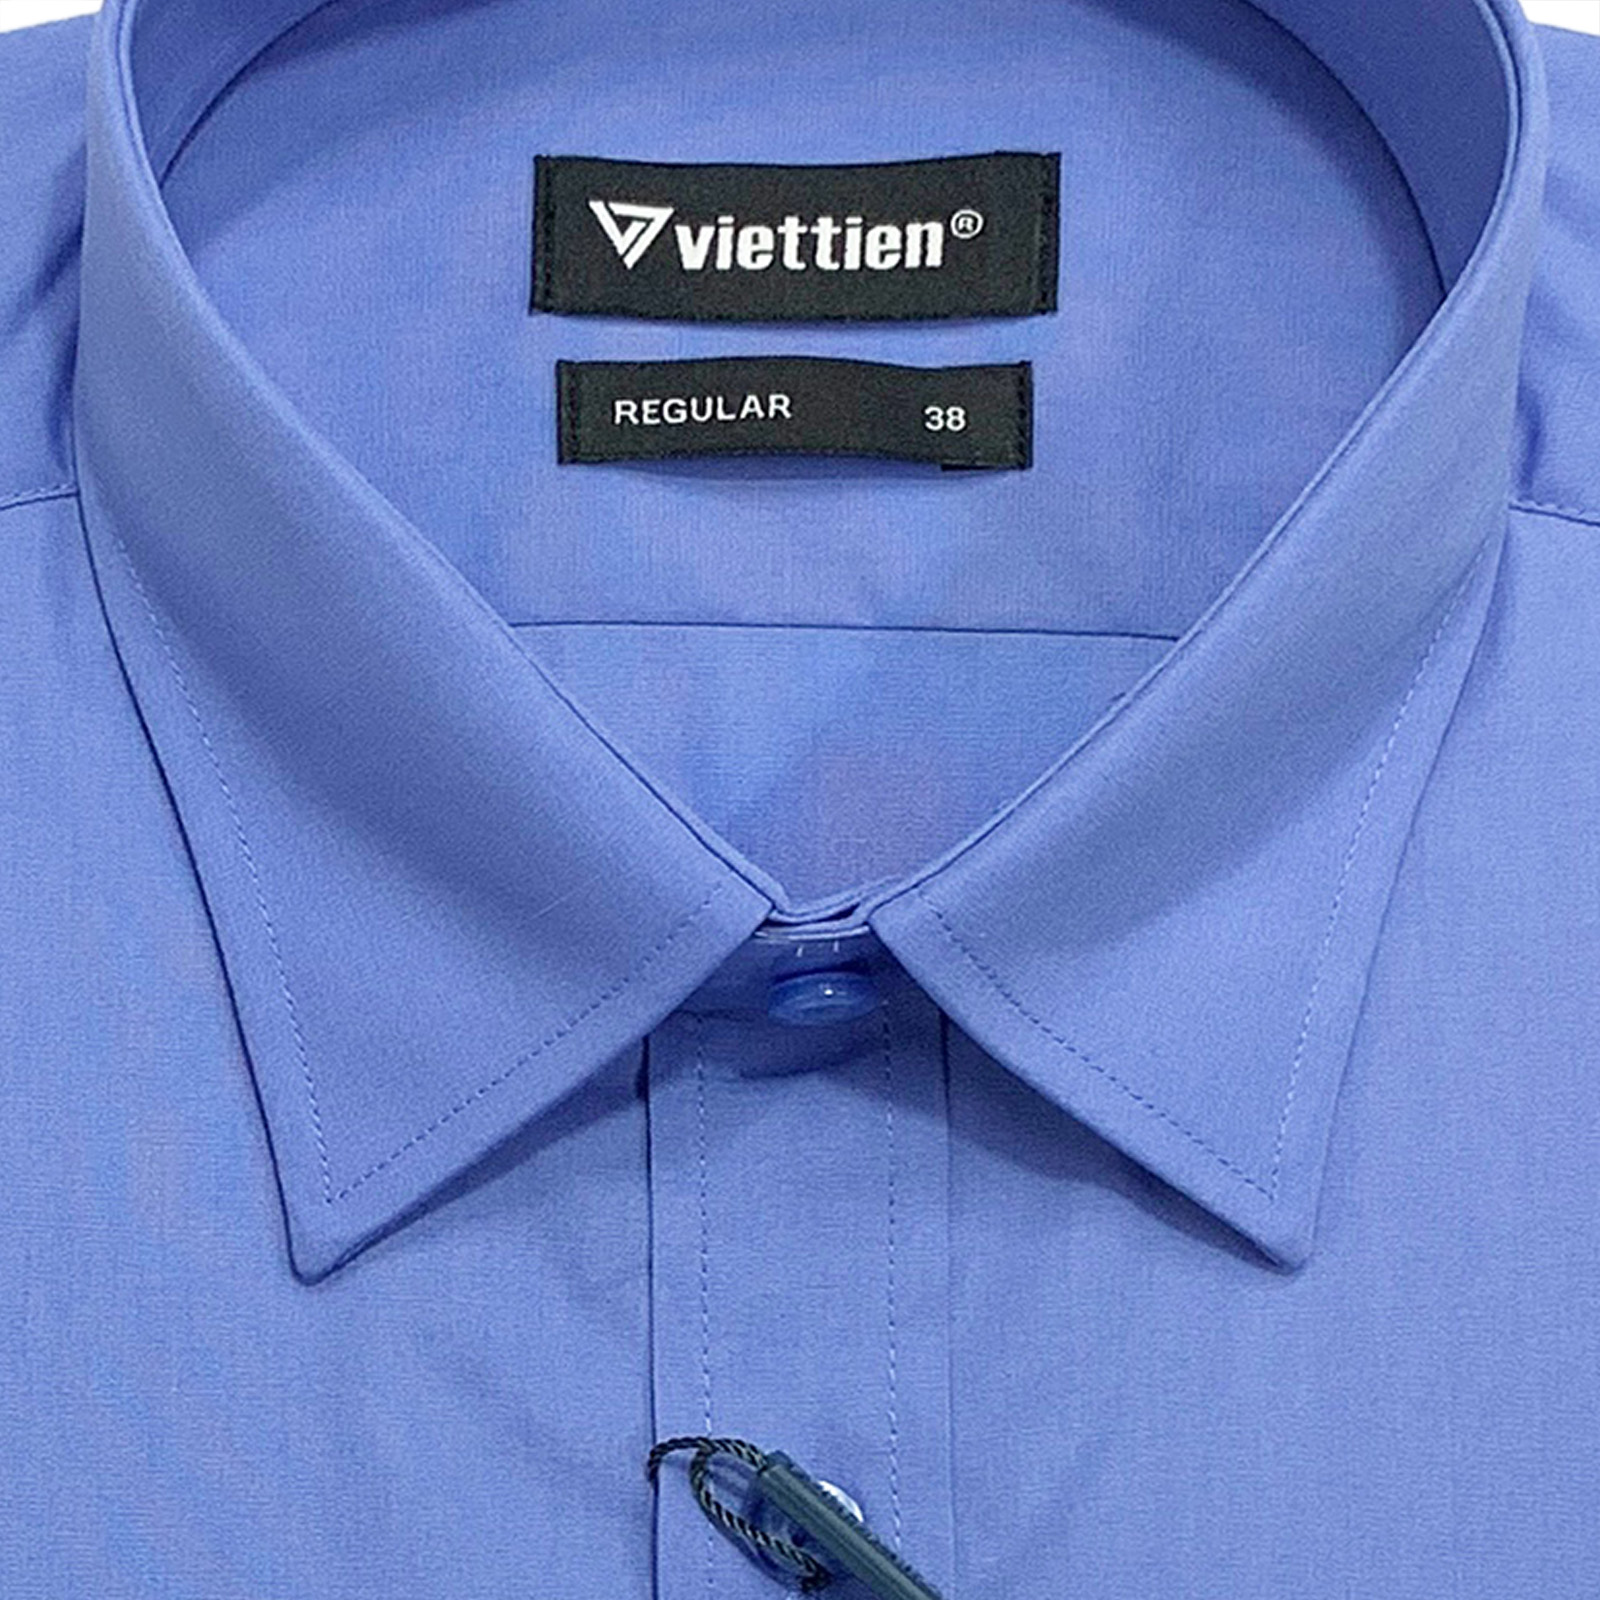 Viettien - Áo sơ mi nam ngắn tay vạt bầu màu xanh bill dáng regular rộng - Áo sơ mi công sở nam Việt Tiến